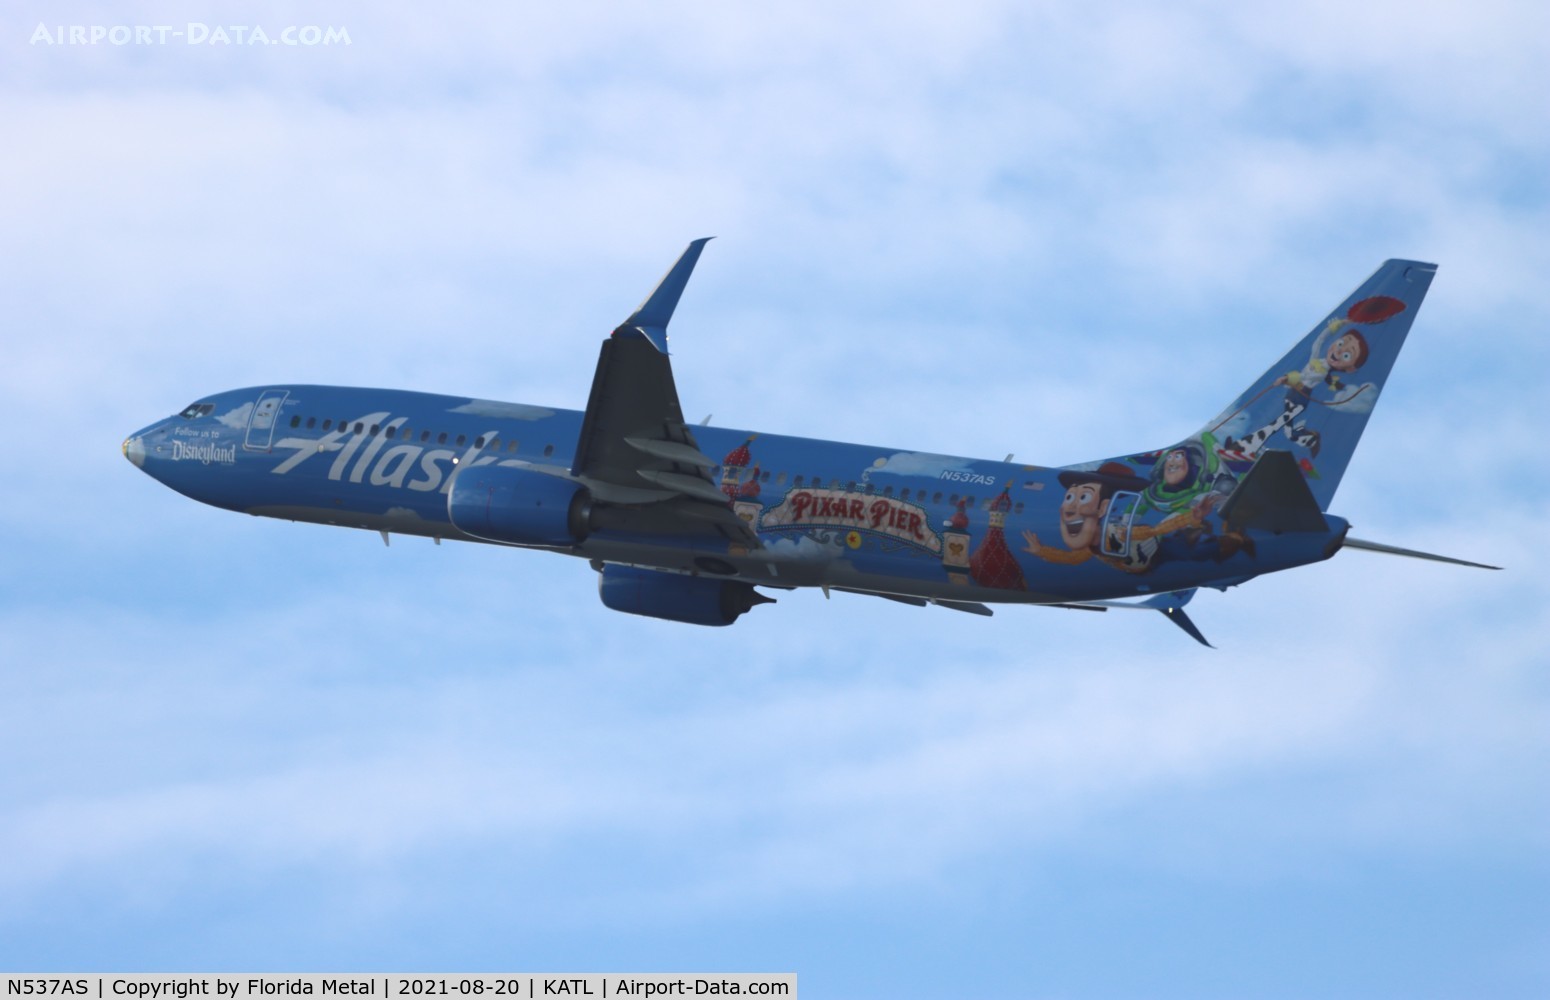 N537AS, 2012 Boeing 737-890 C/N 35204, ASA Pixar 738 zx ATL-SEA